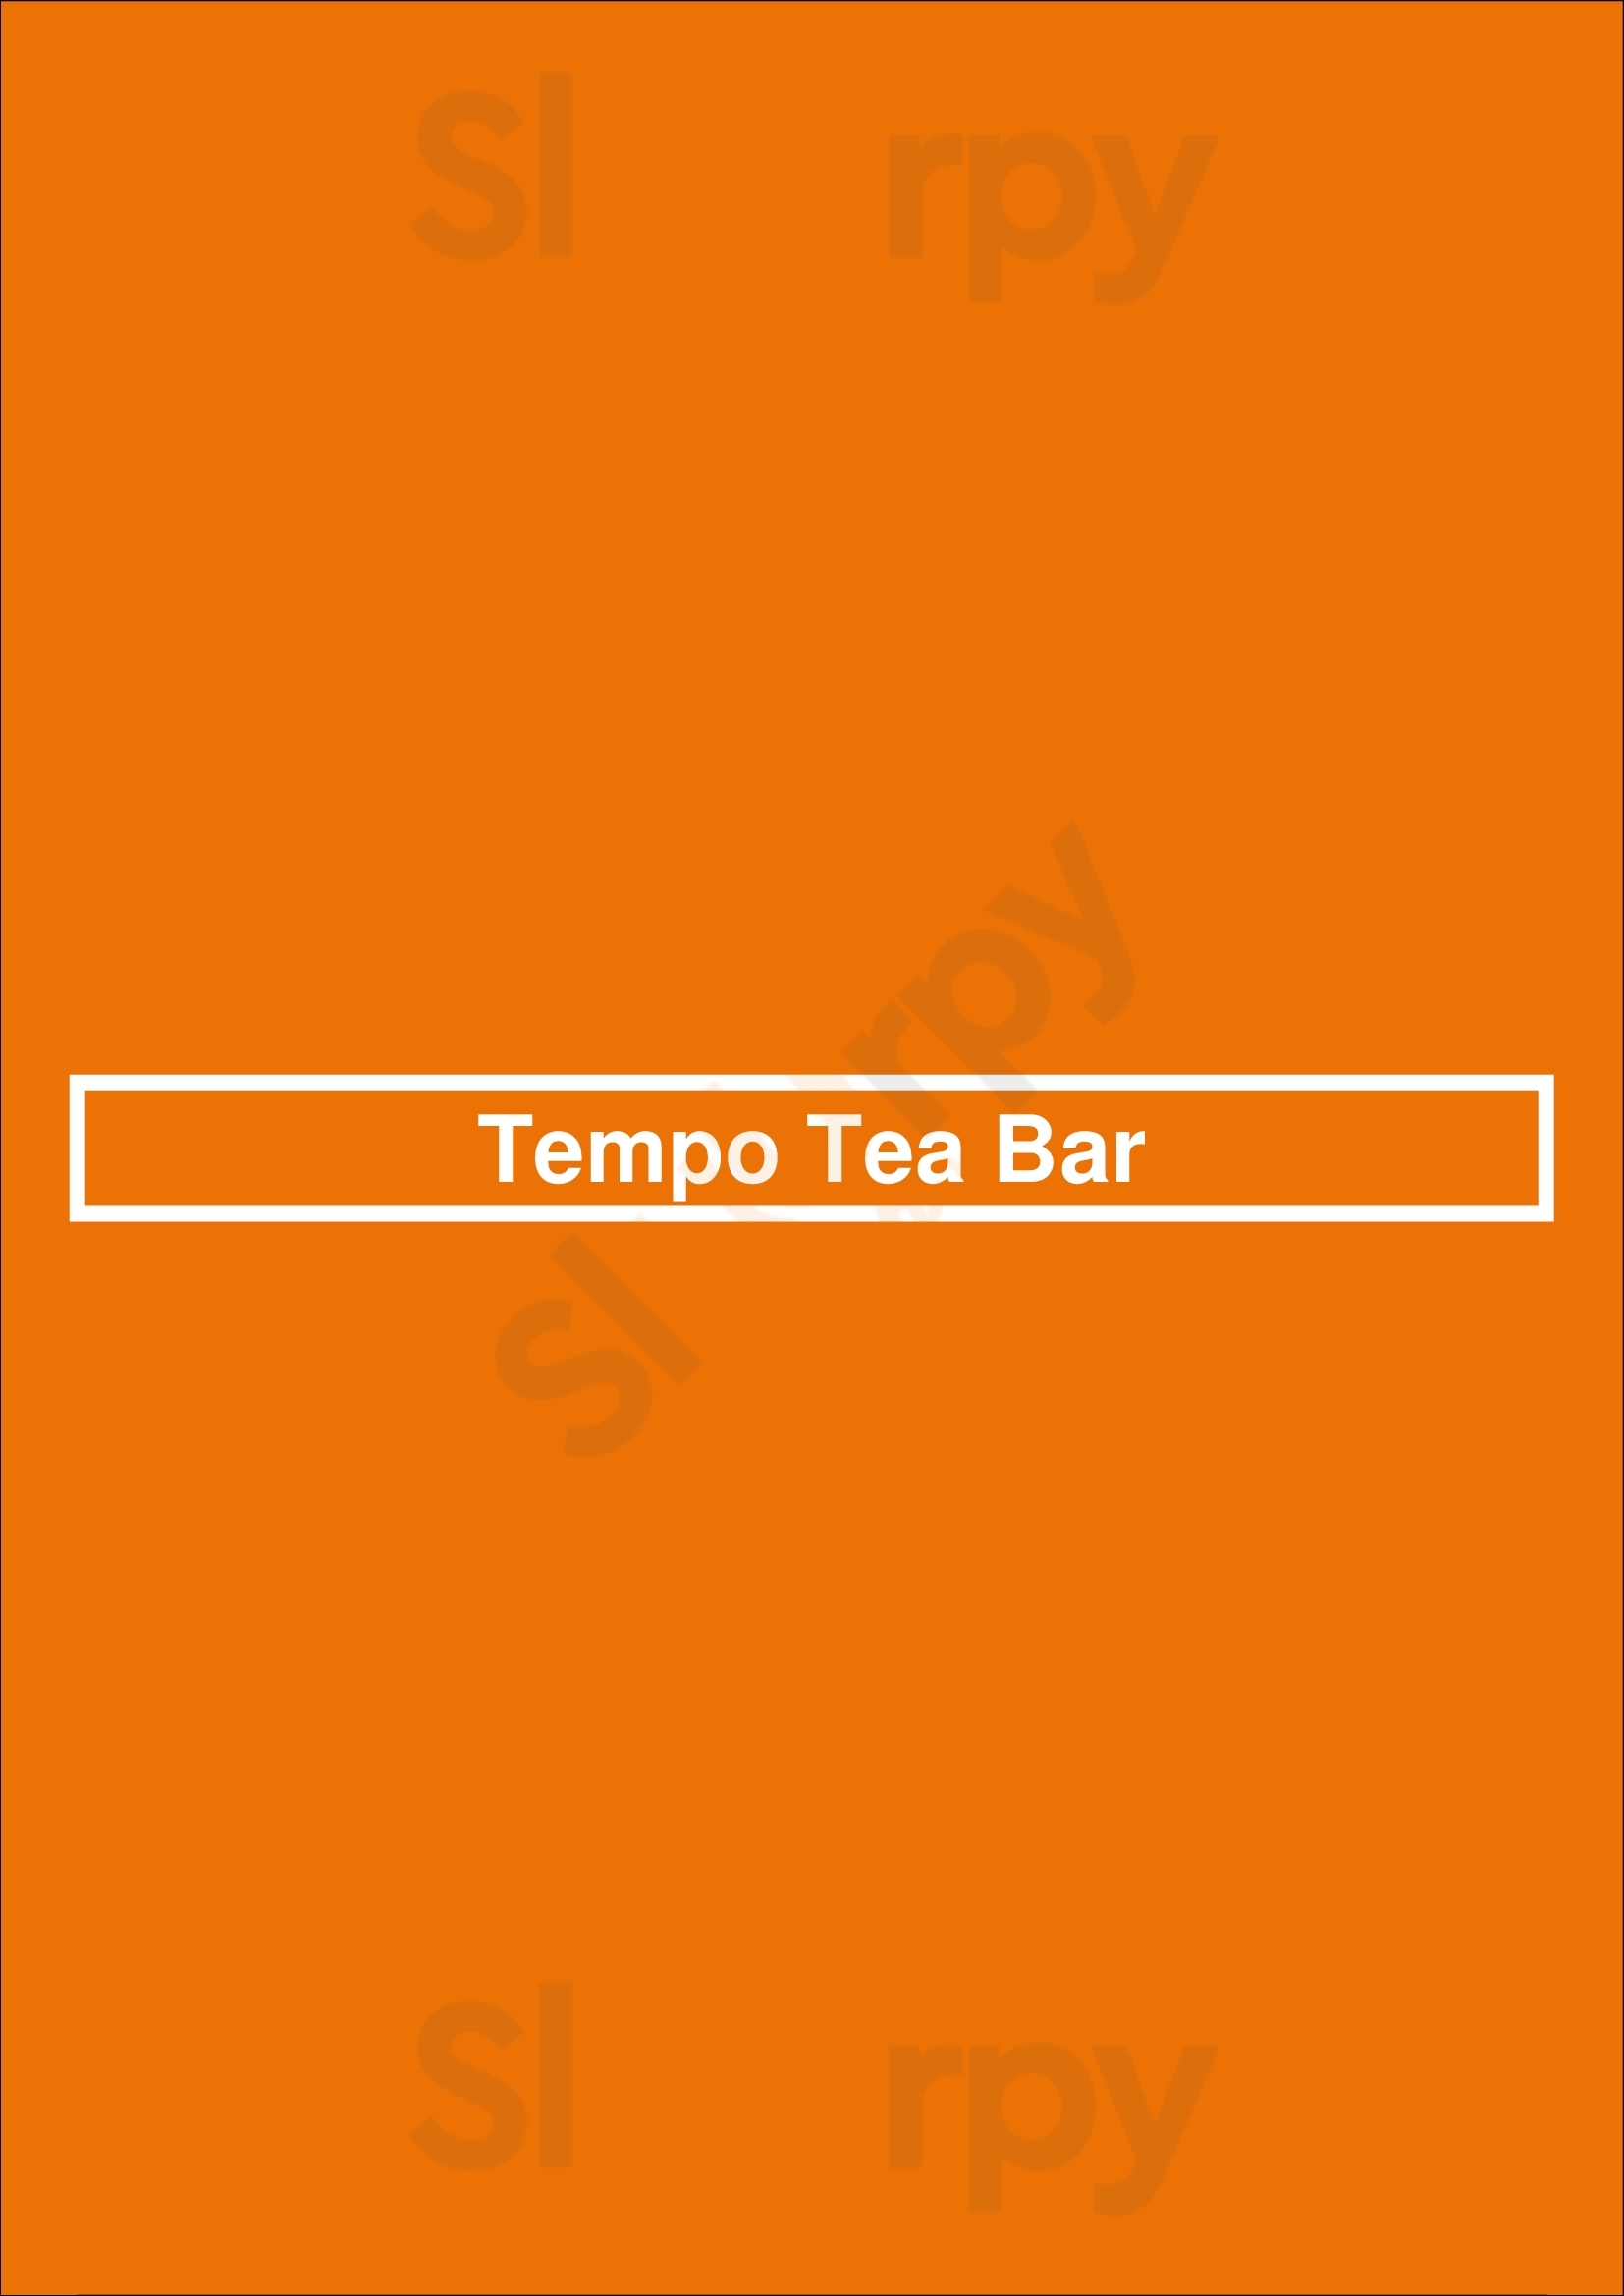 Tempo Tea Bar Glasgow Menu - 1